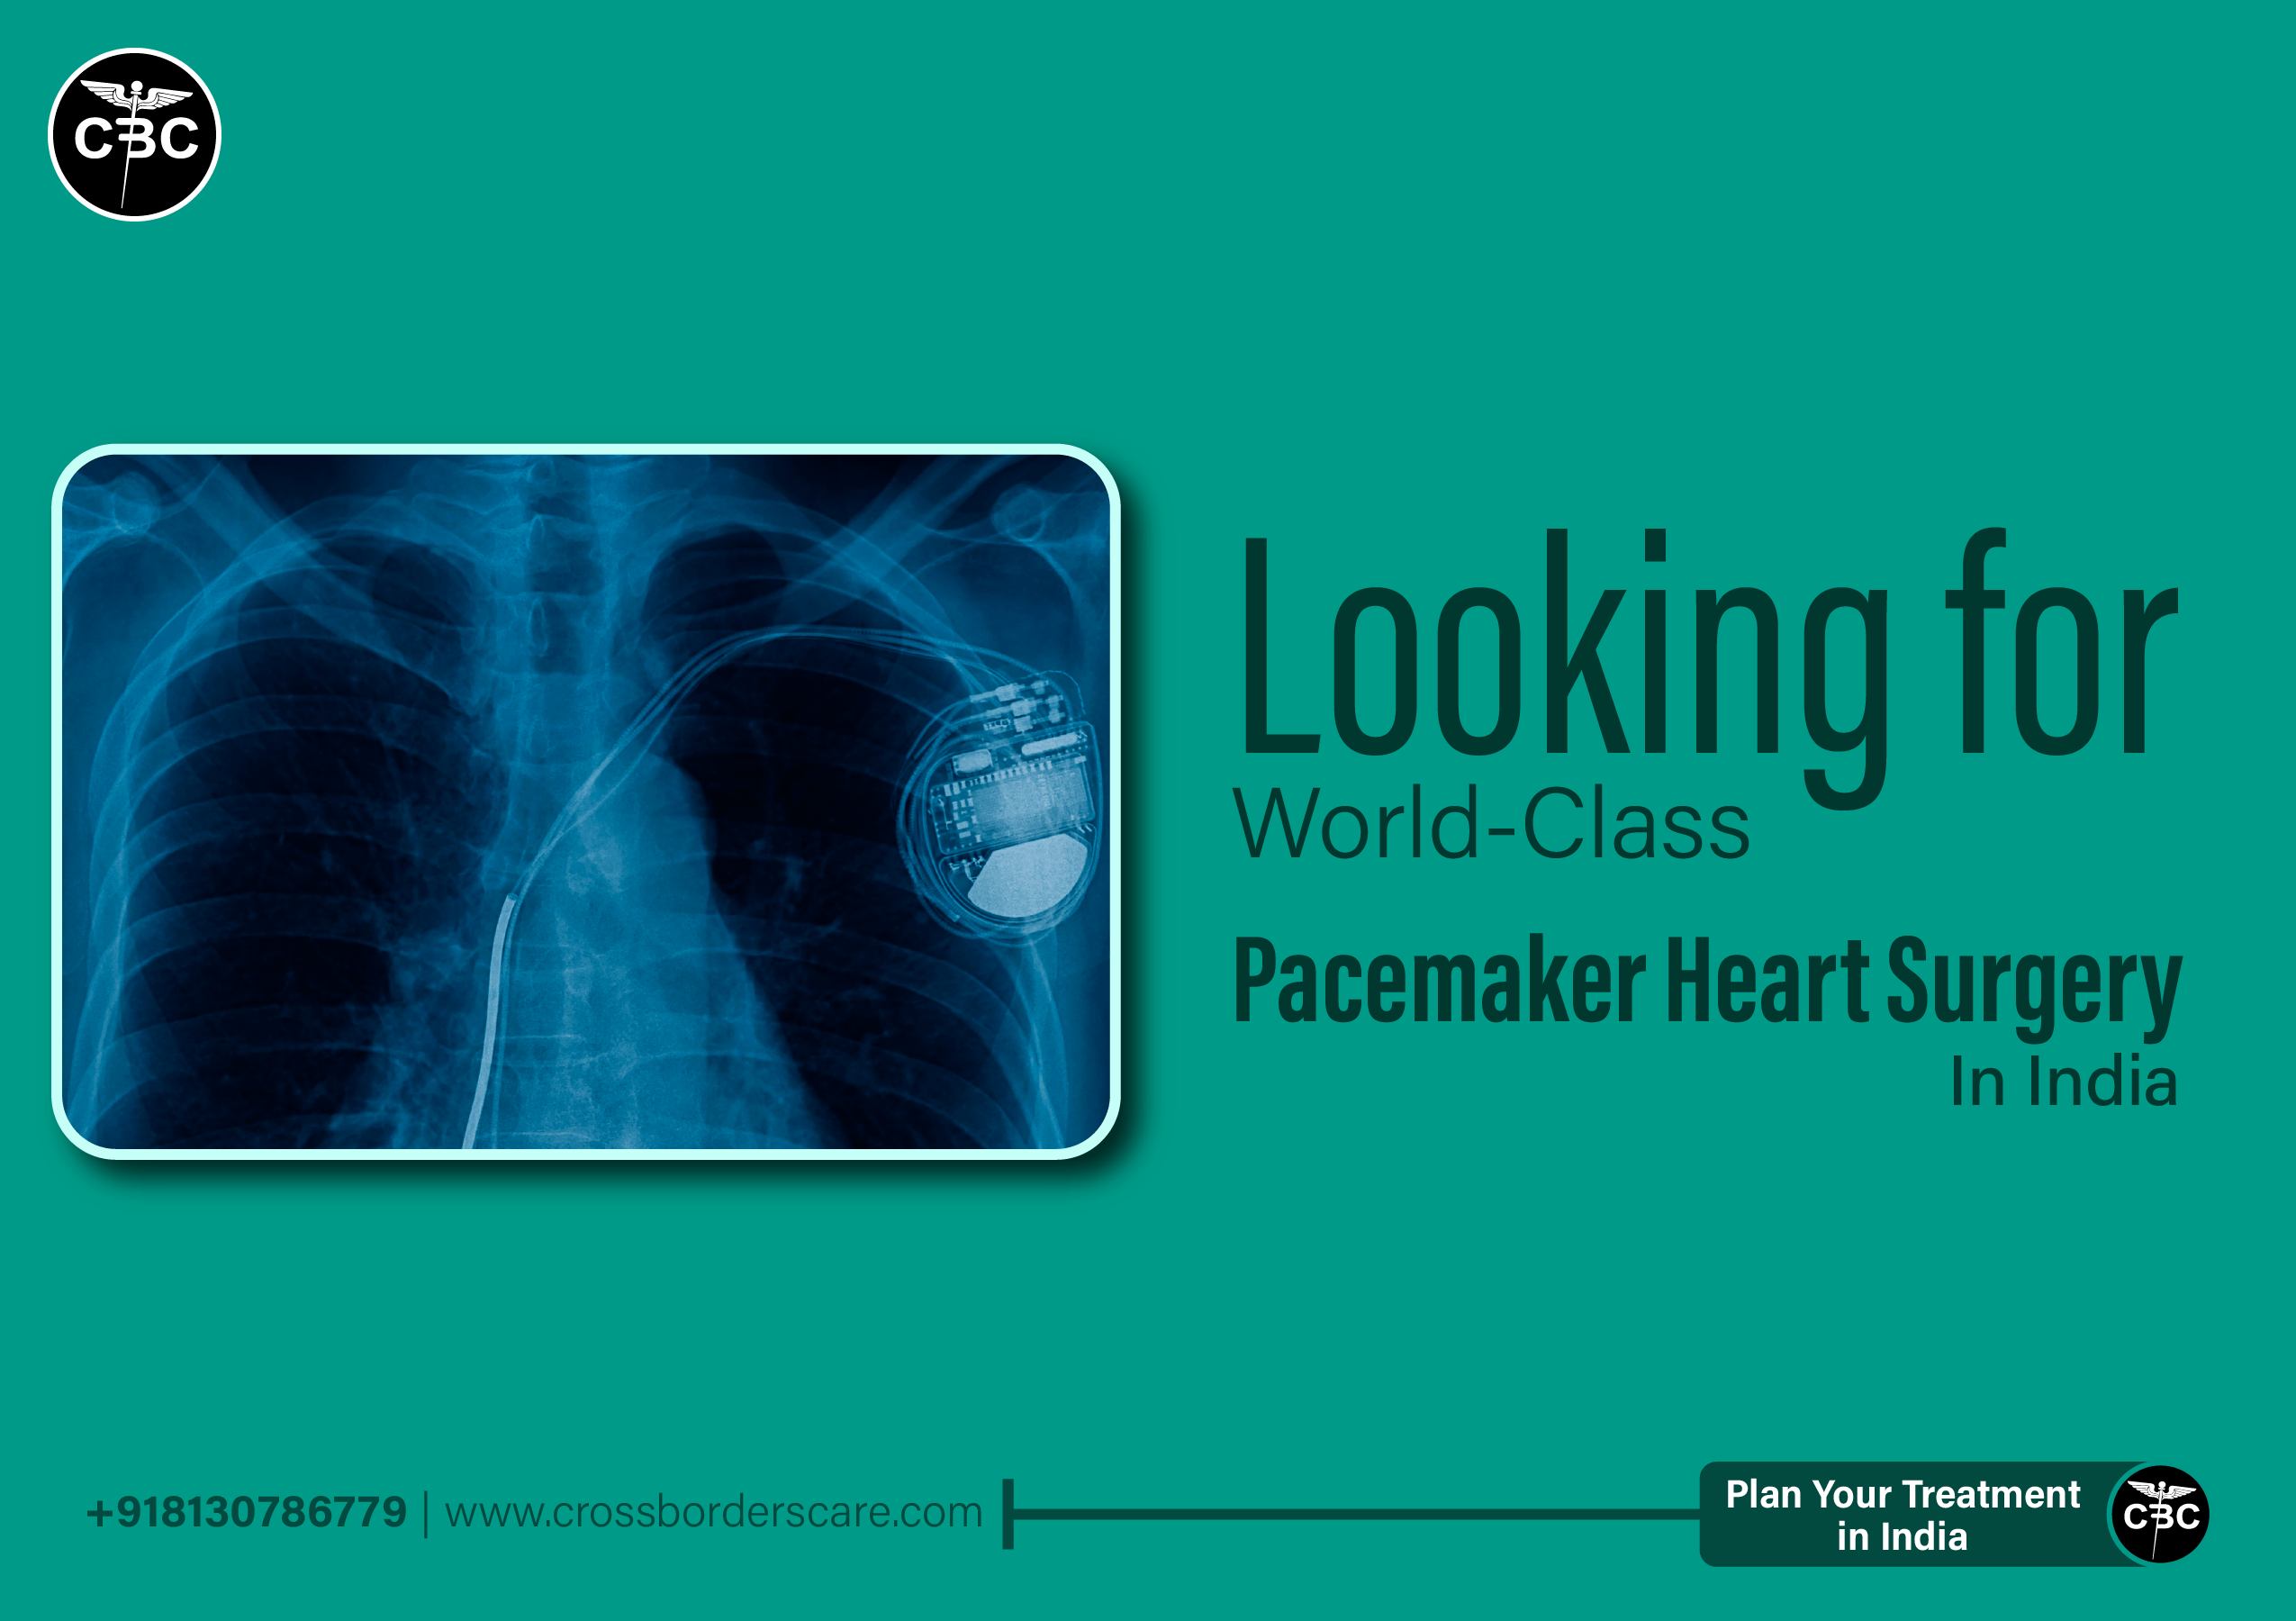 Pacemaker Heart Surgery